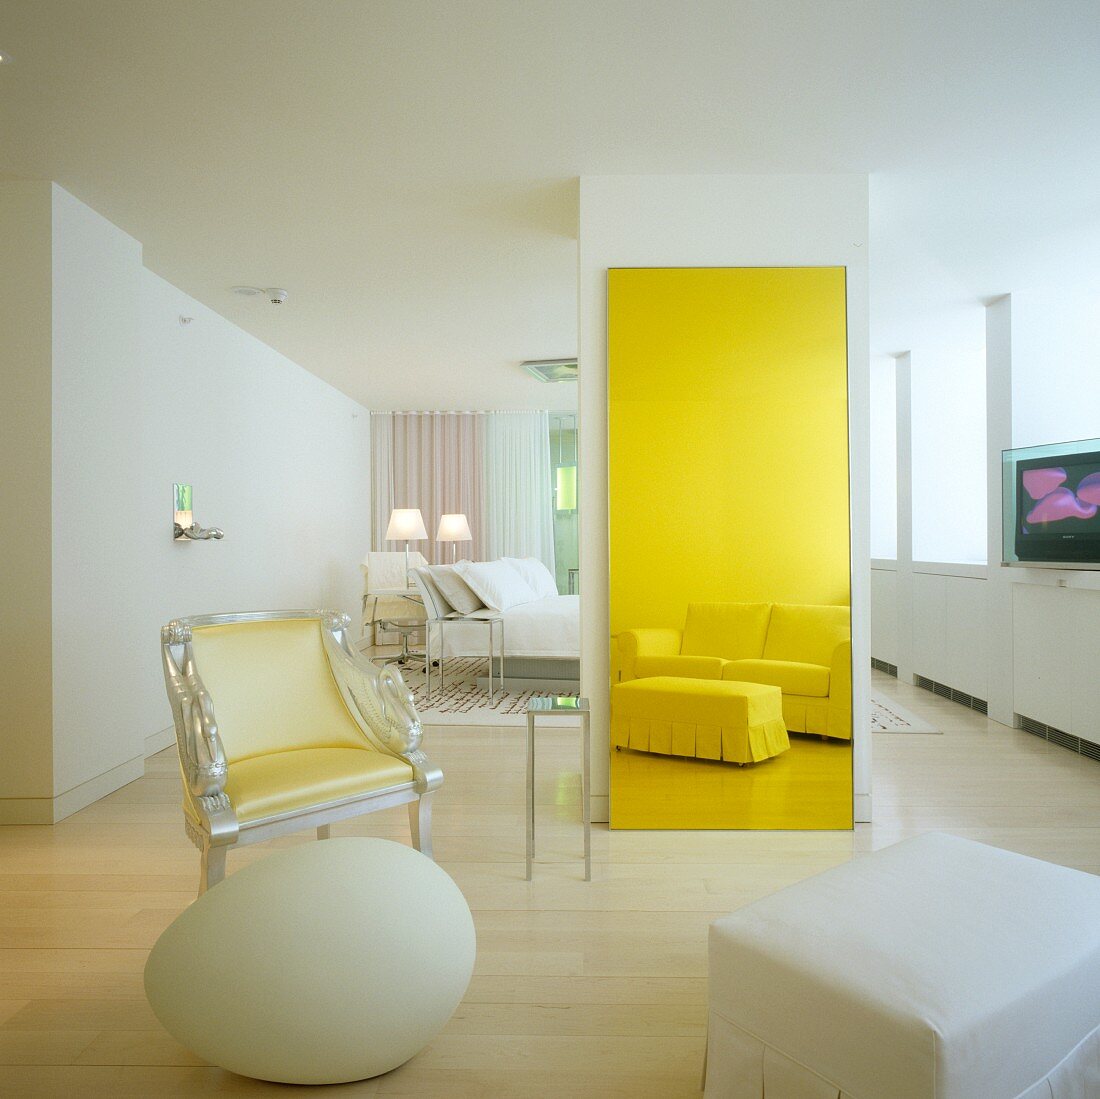 Weisses Hotelzimmer mit postmodernem Interieur - Sitzgruppe mit Sessel, Deko-Ei und klassischer Polstergarnitur als Reflektion im gelb getönten Spiegel